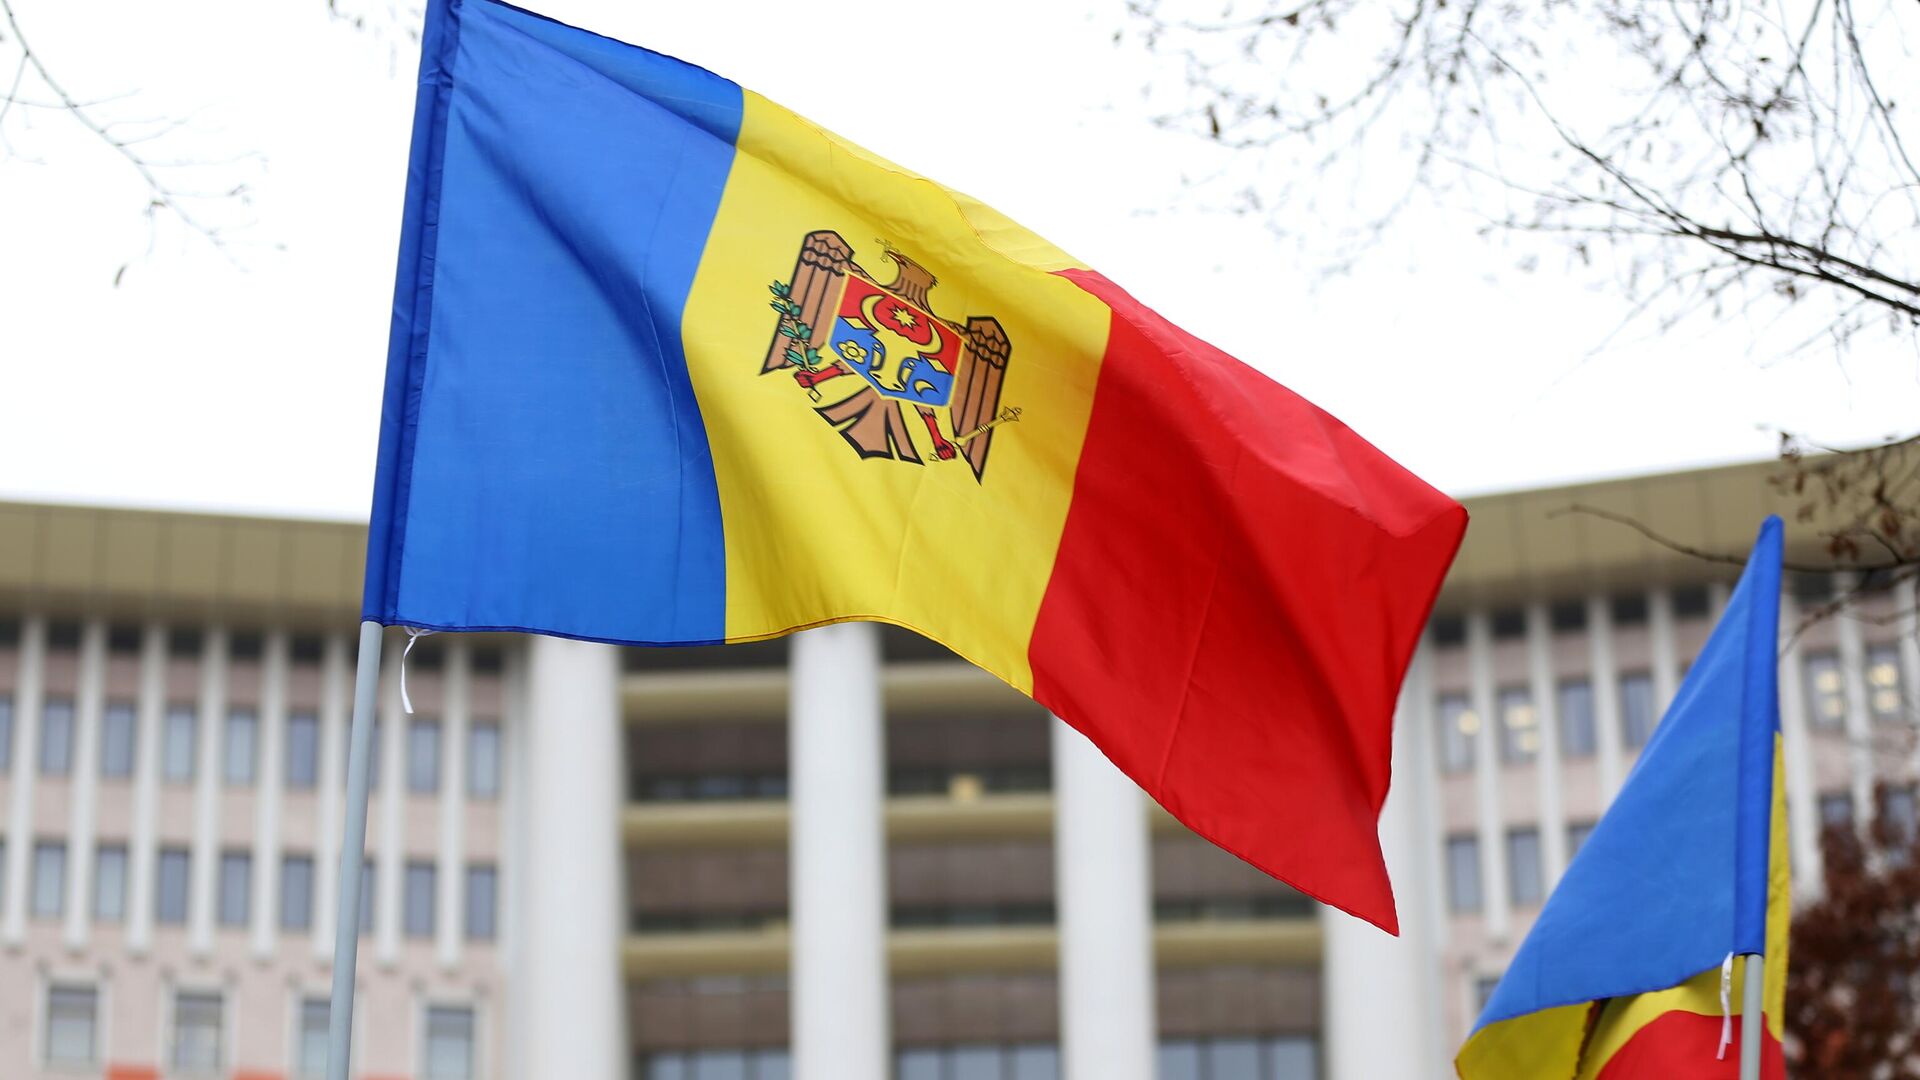 Міноборони Молдови підтвердило рішення про тимчасове закриття повітряного простору країни, причиною чого став невстановлений об’єкт, схожий на повітряну кулю.